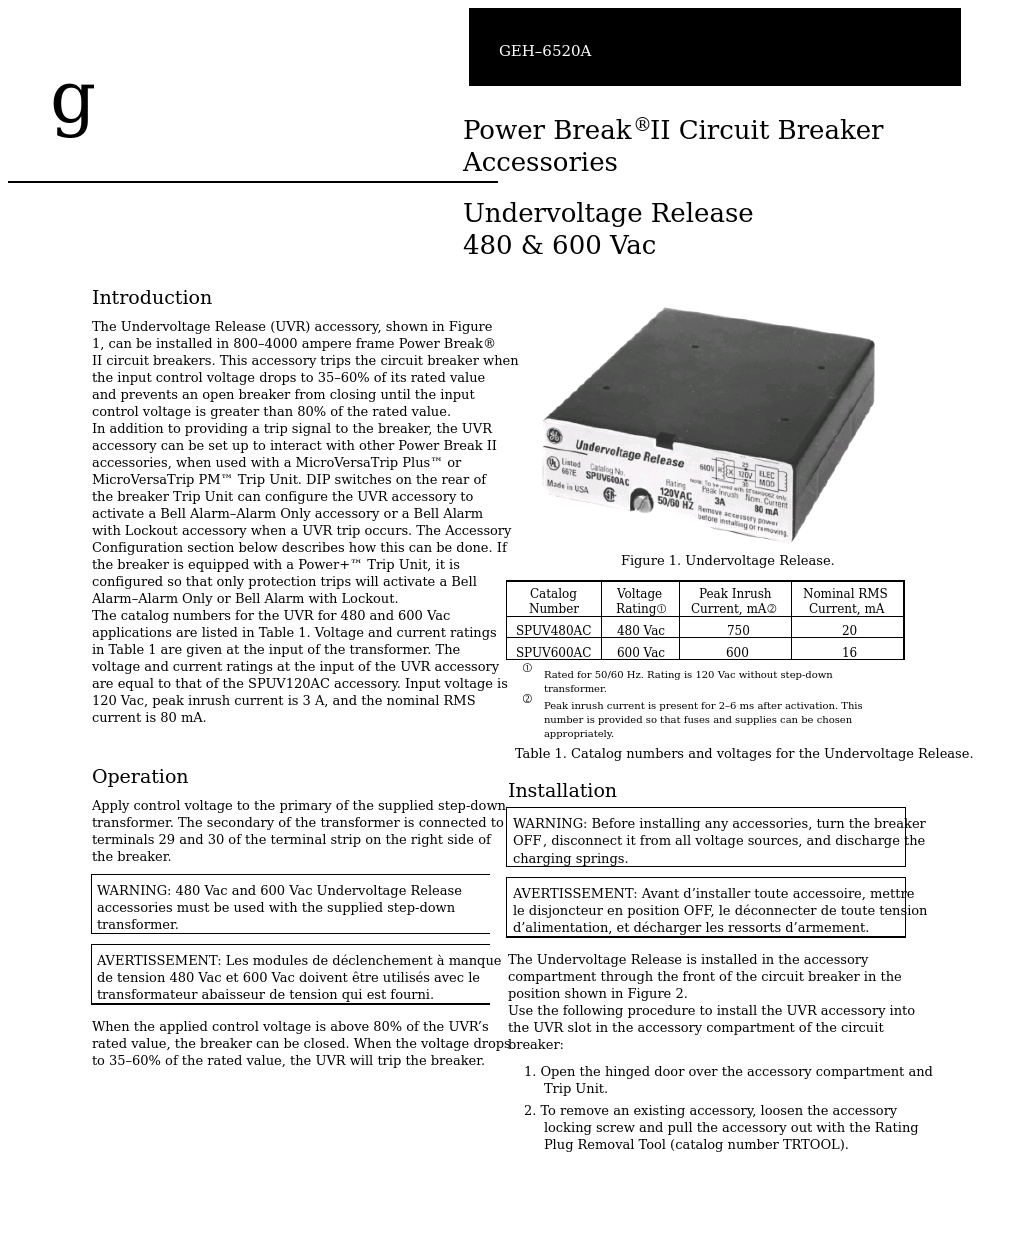 Power Break II Undervoltage Release 480 & 600 Vac